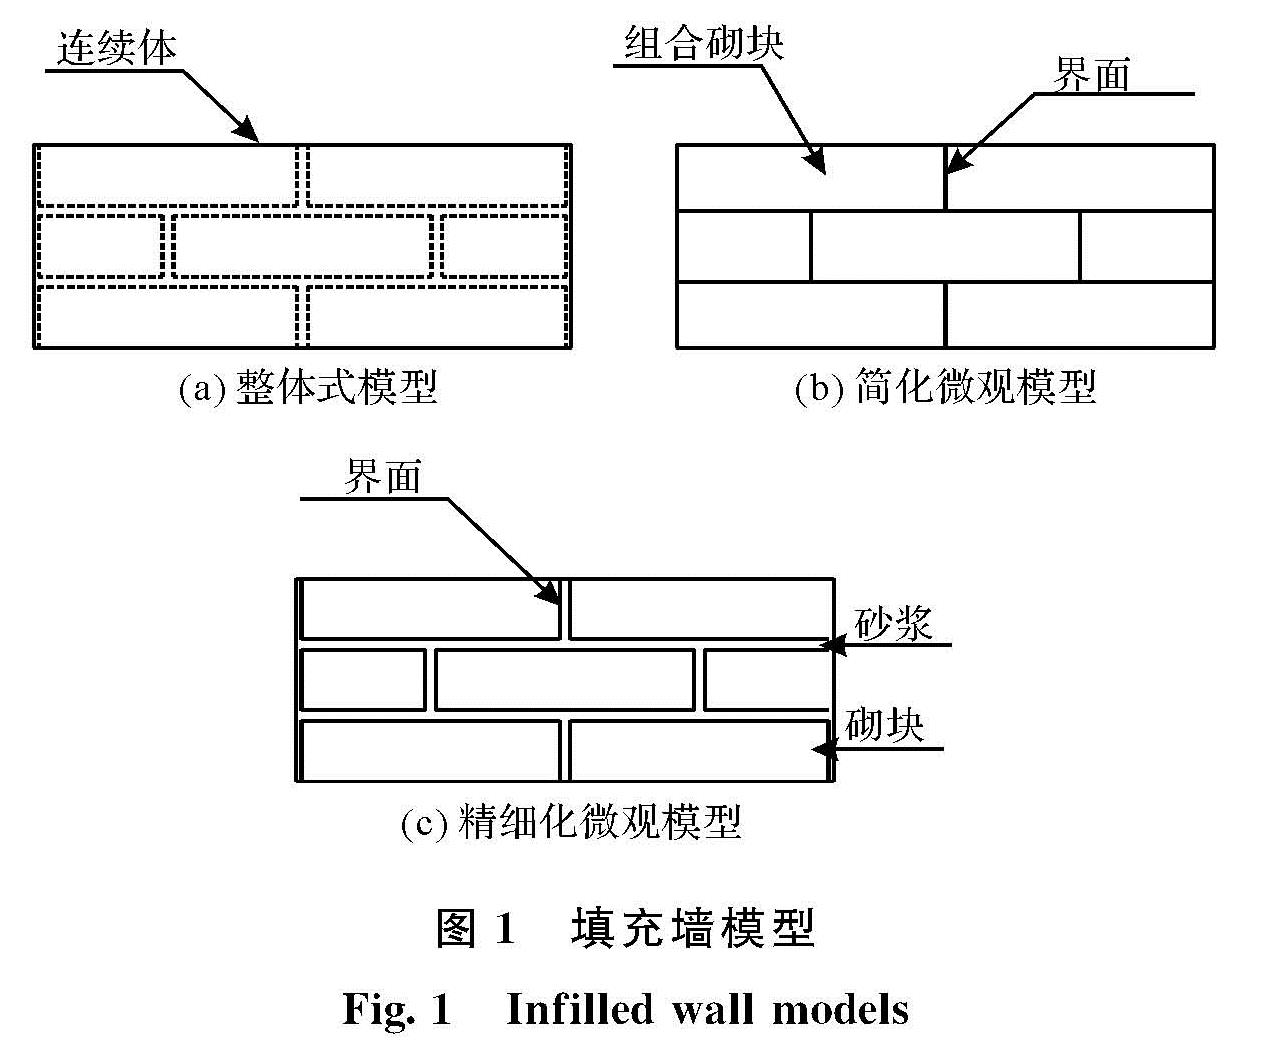 图1 填充墙模型<br/>Fig.1 Infilled wall models